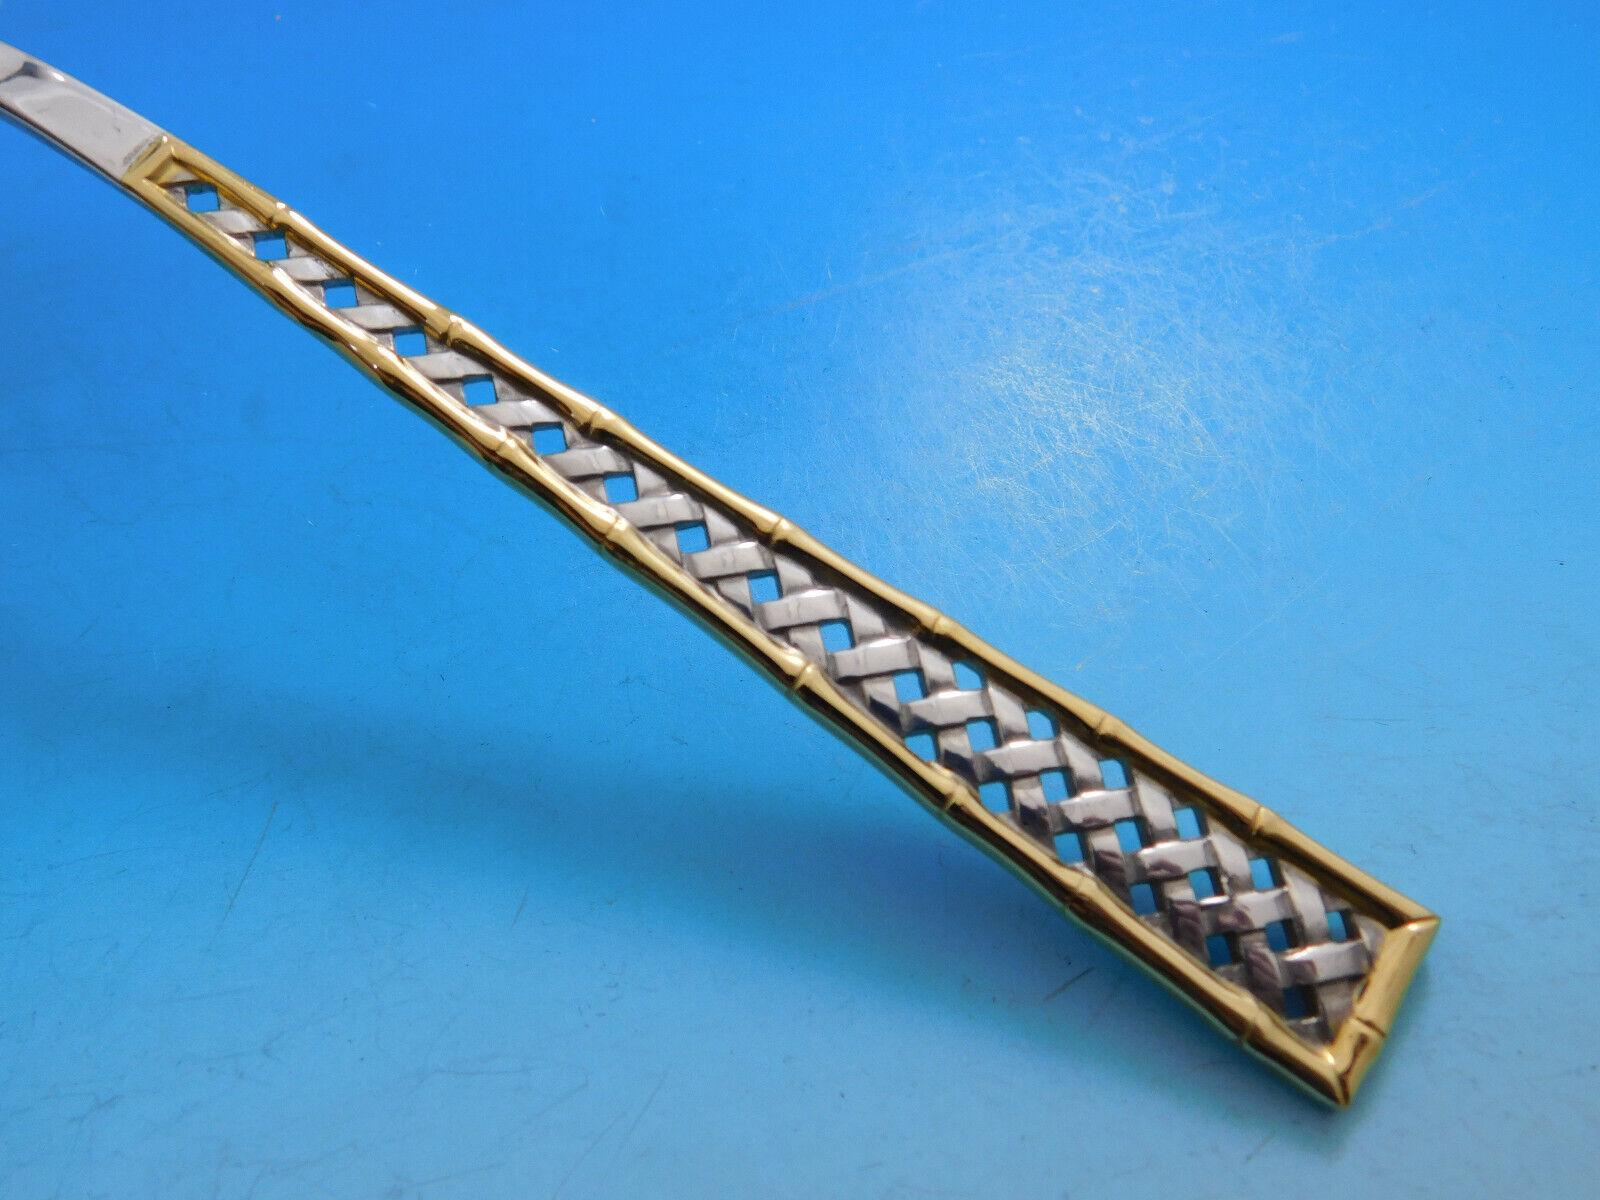 Wunderschönes Golden Tradewinds by International Besteck aus Sterlingsilber - 66 Teile. Dieses Muster zeichnet sich durch ein Korbflechtmuster und eine Bambusbordüre mit Goldakzent aus. Dieses Set enthält:

12 Messer, 8 3/4